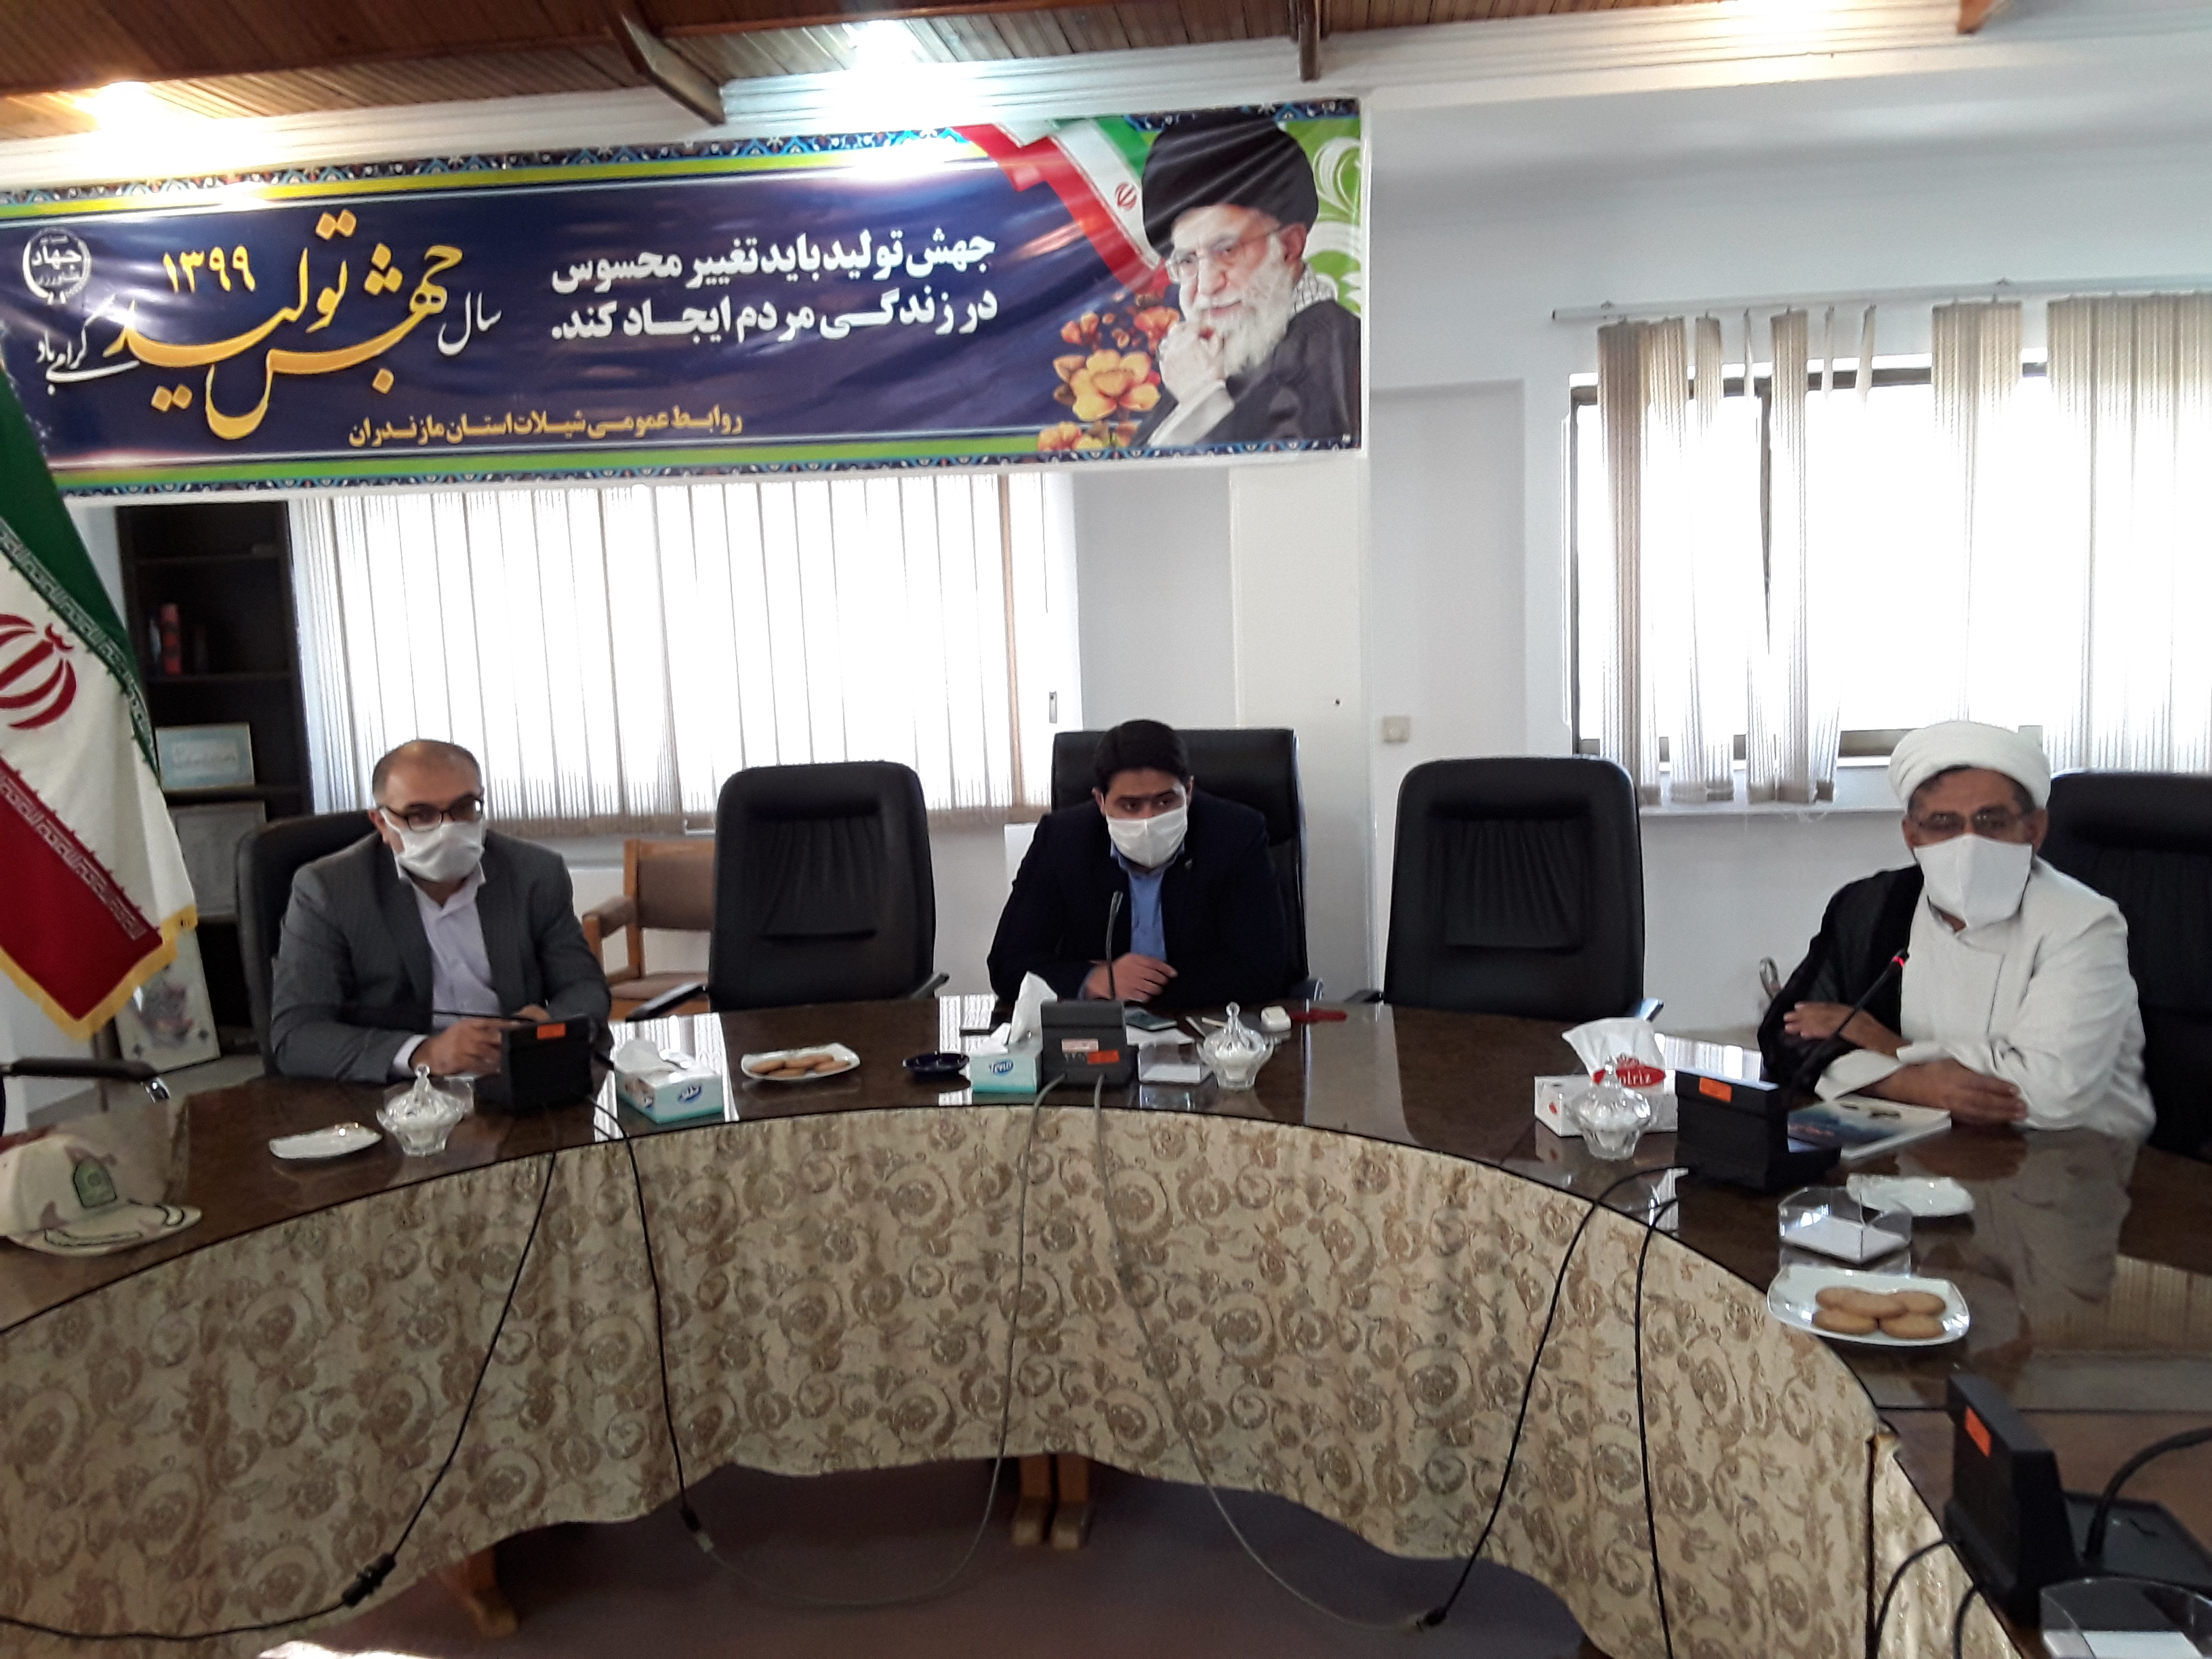 برگزاری جلسه کمیته ارتقاء سلامت اداری و صیانت از حقوق شهروندی شیلات مازندران